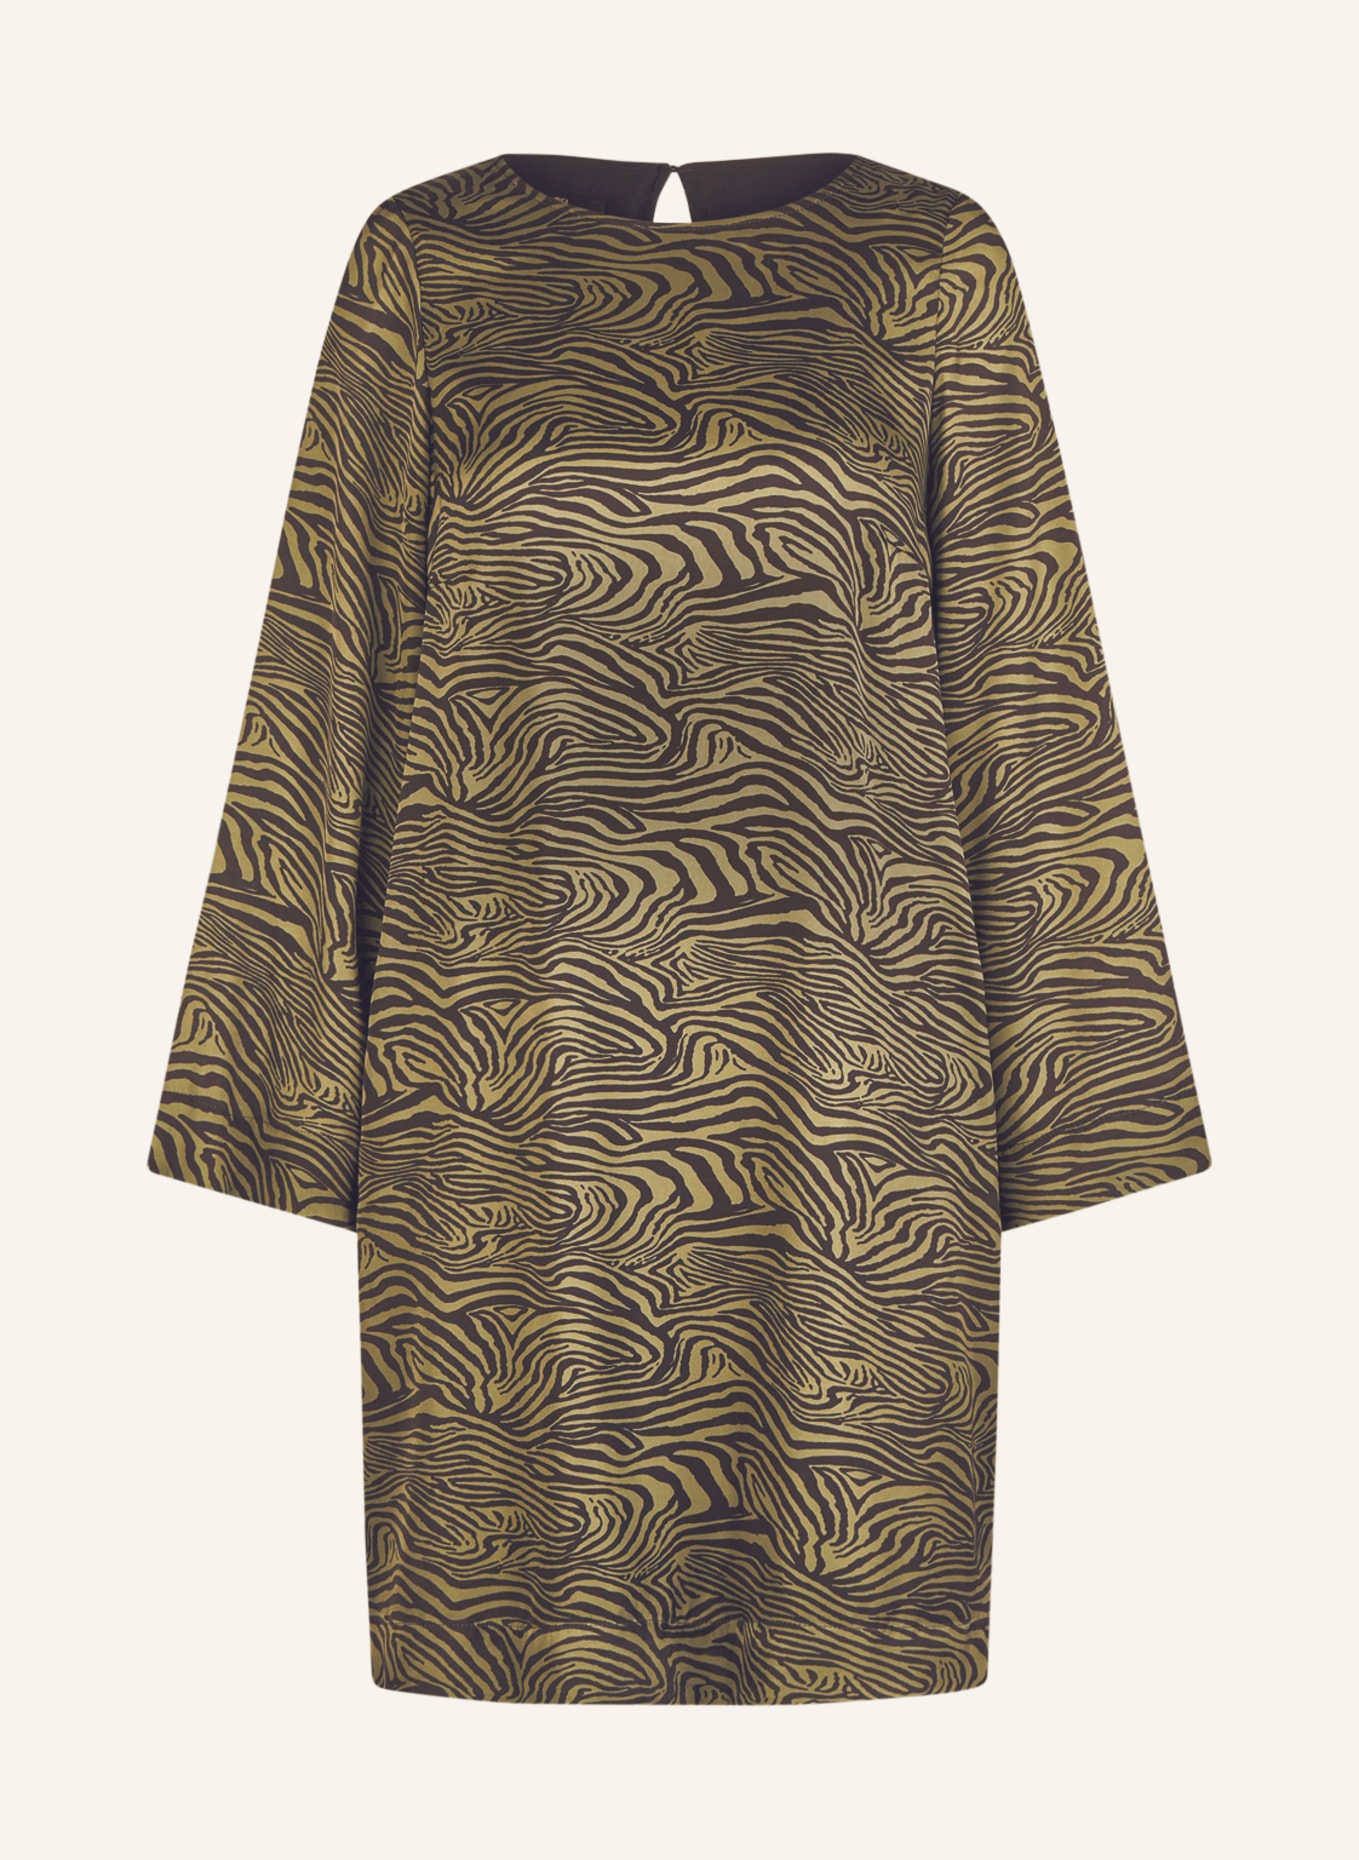 MARC AUREL Satin dress, Color: OLIVE/ BLACK (Image 1)